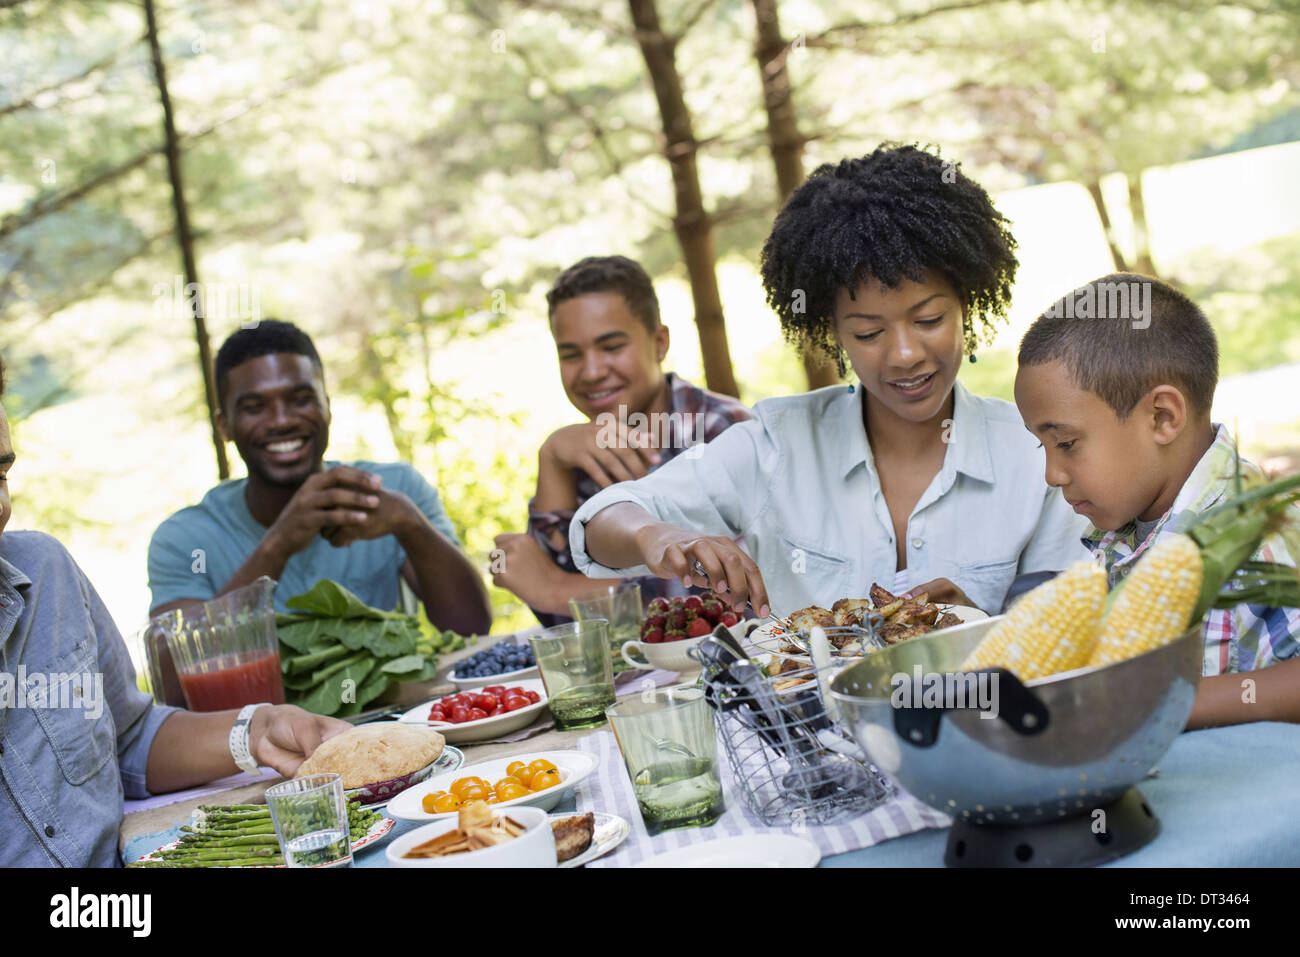 Ein Familien-Picknick in einem schattigen Waldgebiet Erwachsene und Kinder an einem Tisch reichte um Platten und Essen Stockfoto